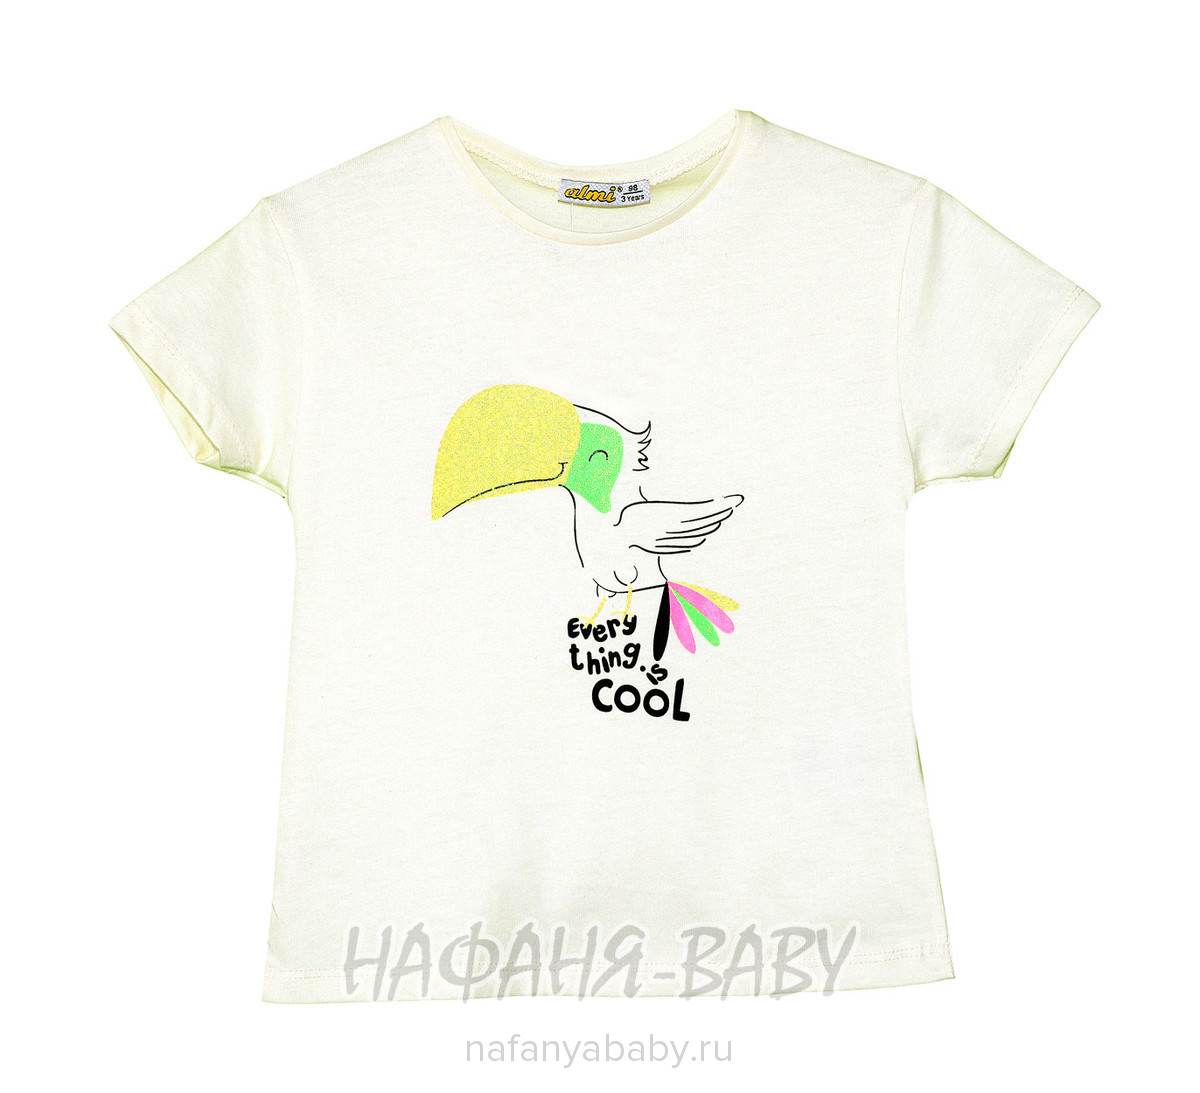 Детская футболка ALMI арт: 622169, 1-4 года, 5-9 лет, цвет кремовый, оптом Турция